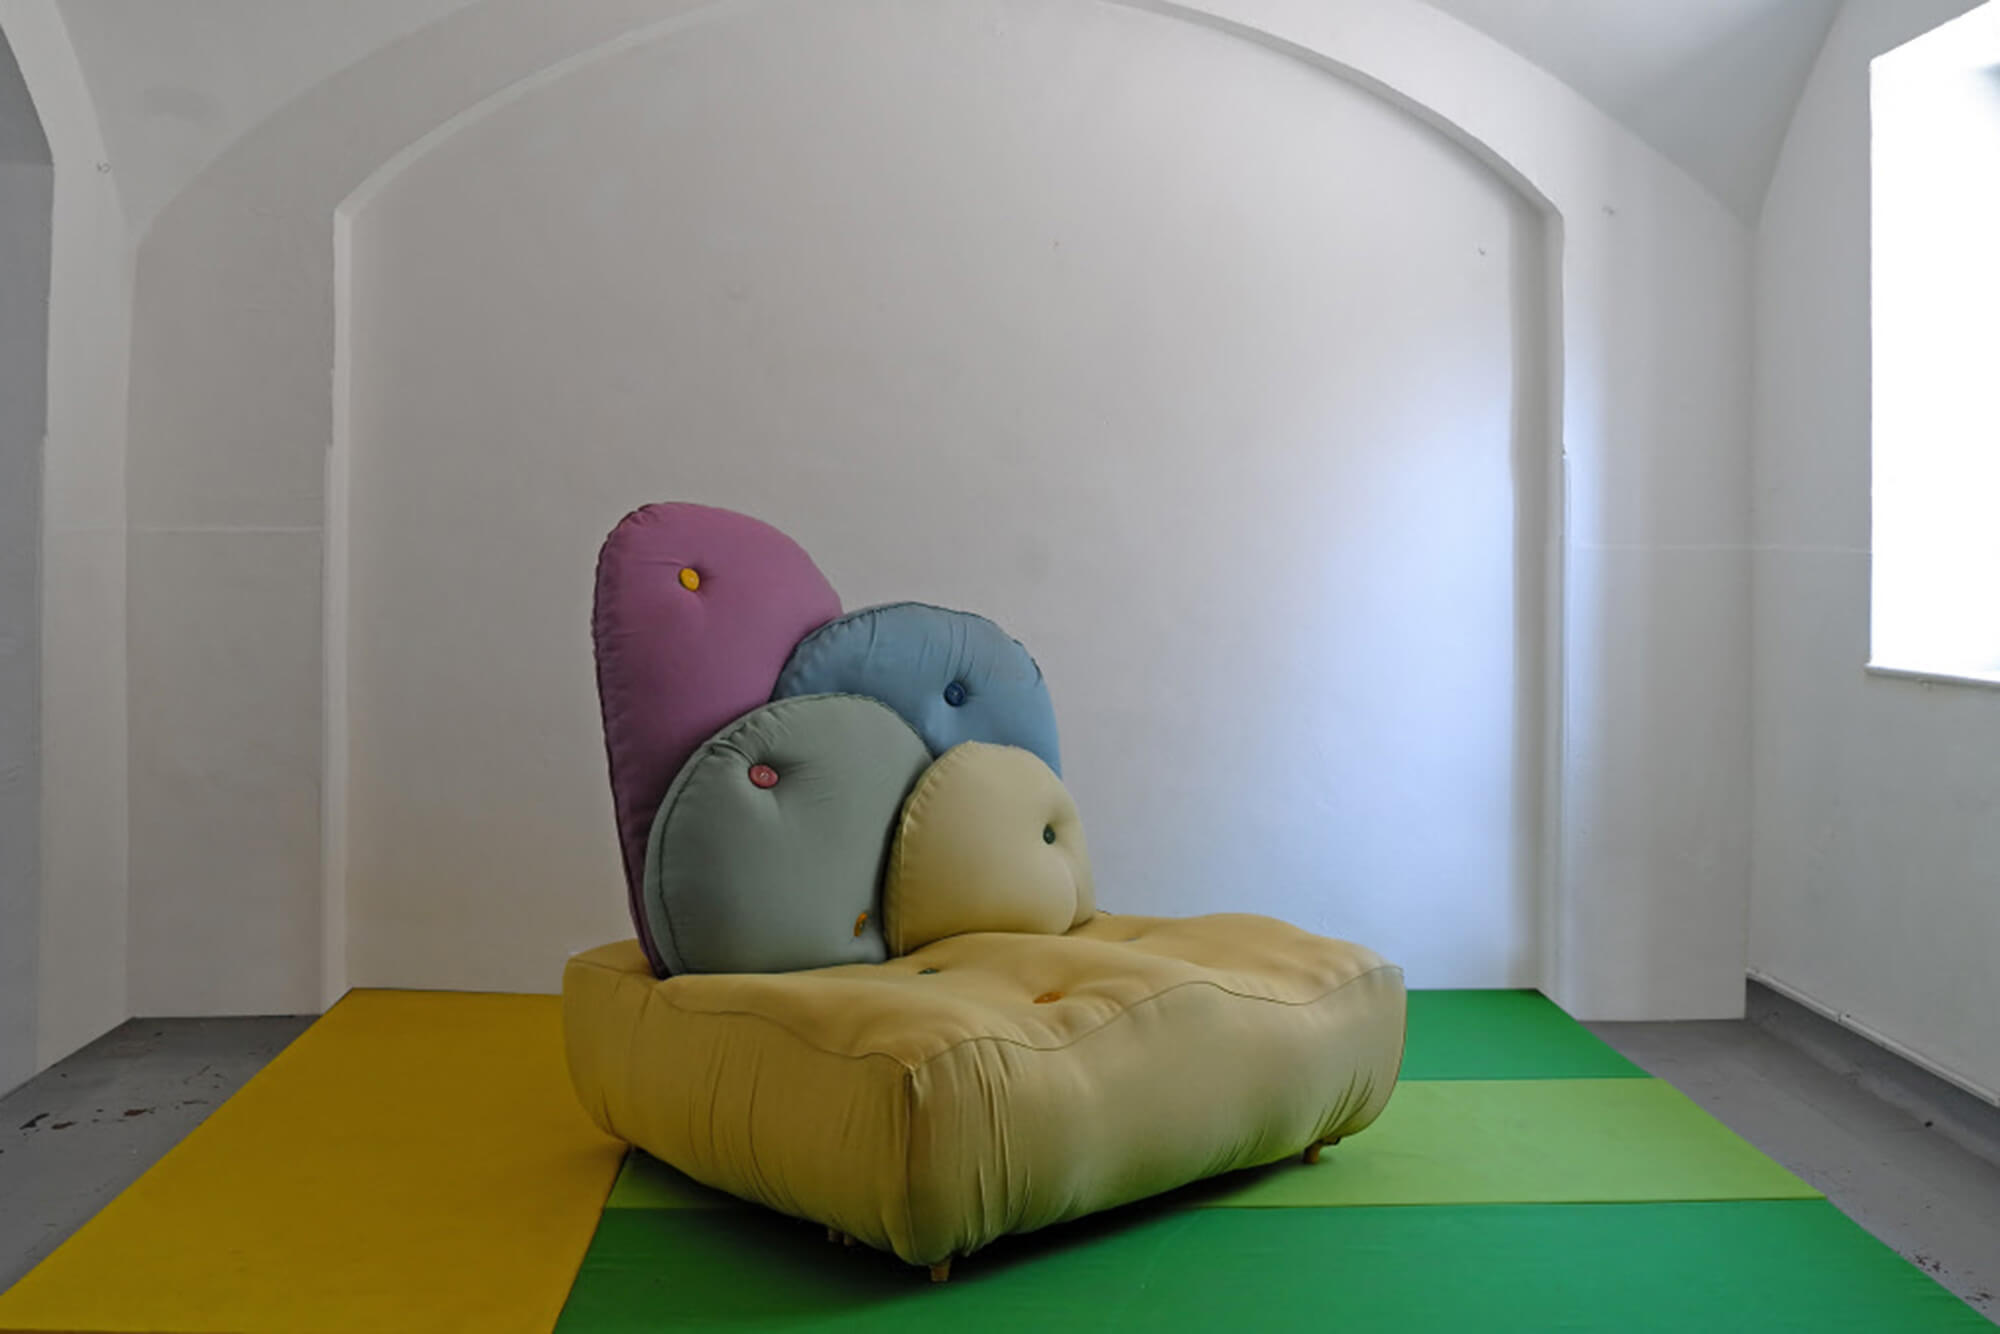 Sofá contemporâneo por Nacho Carbonell com cores pastel de tecidos Sunbrella